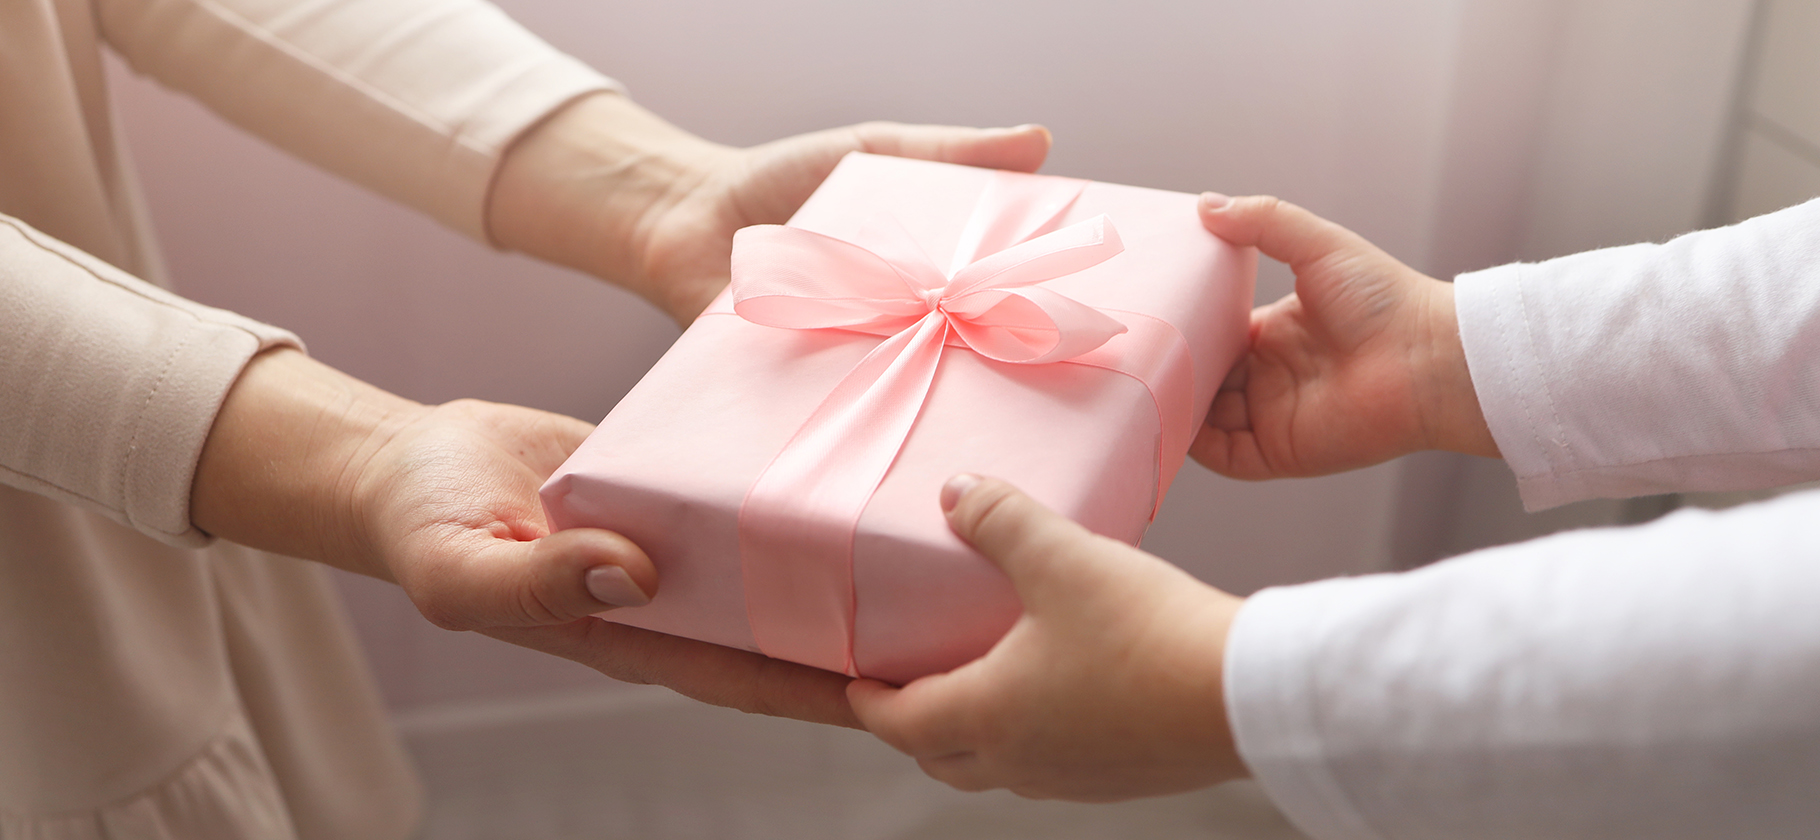 Психолог рассказала, почему дарить подарки приятно